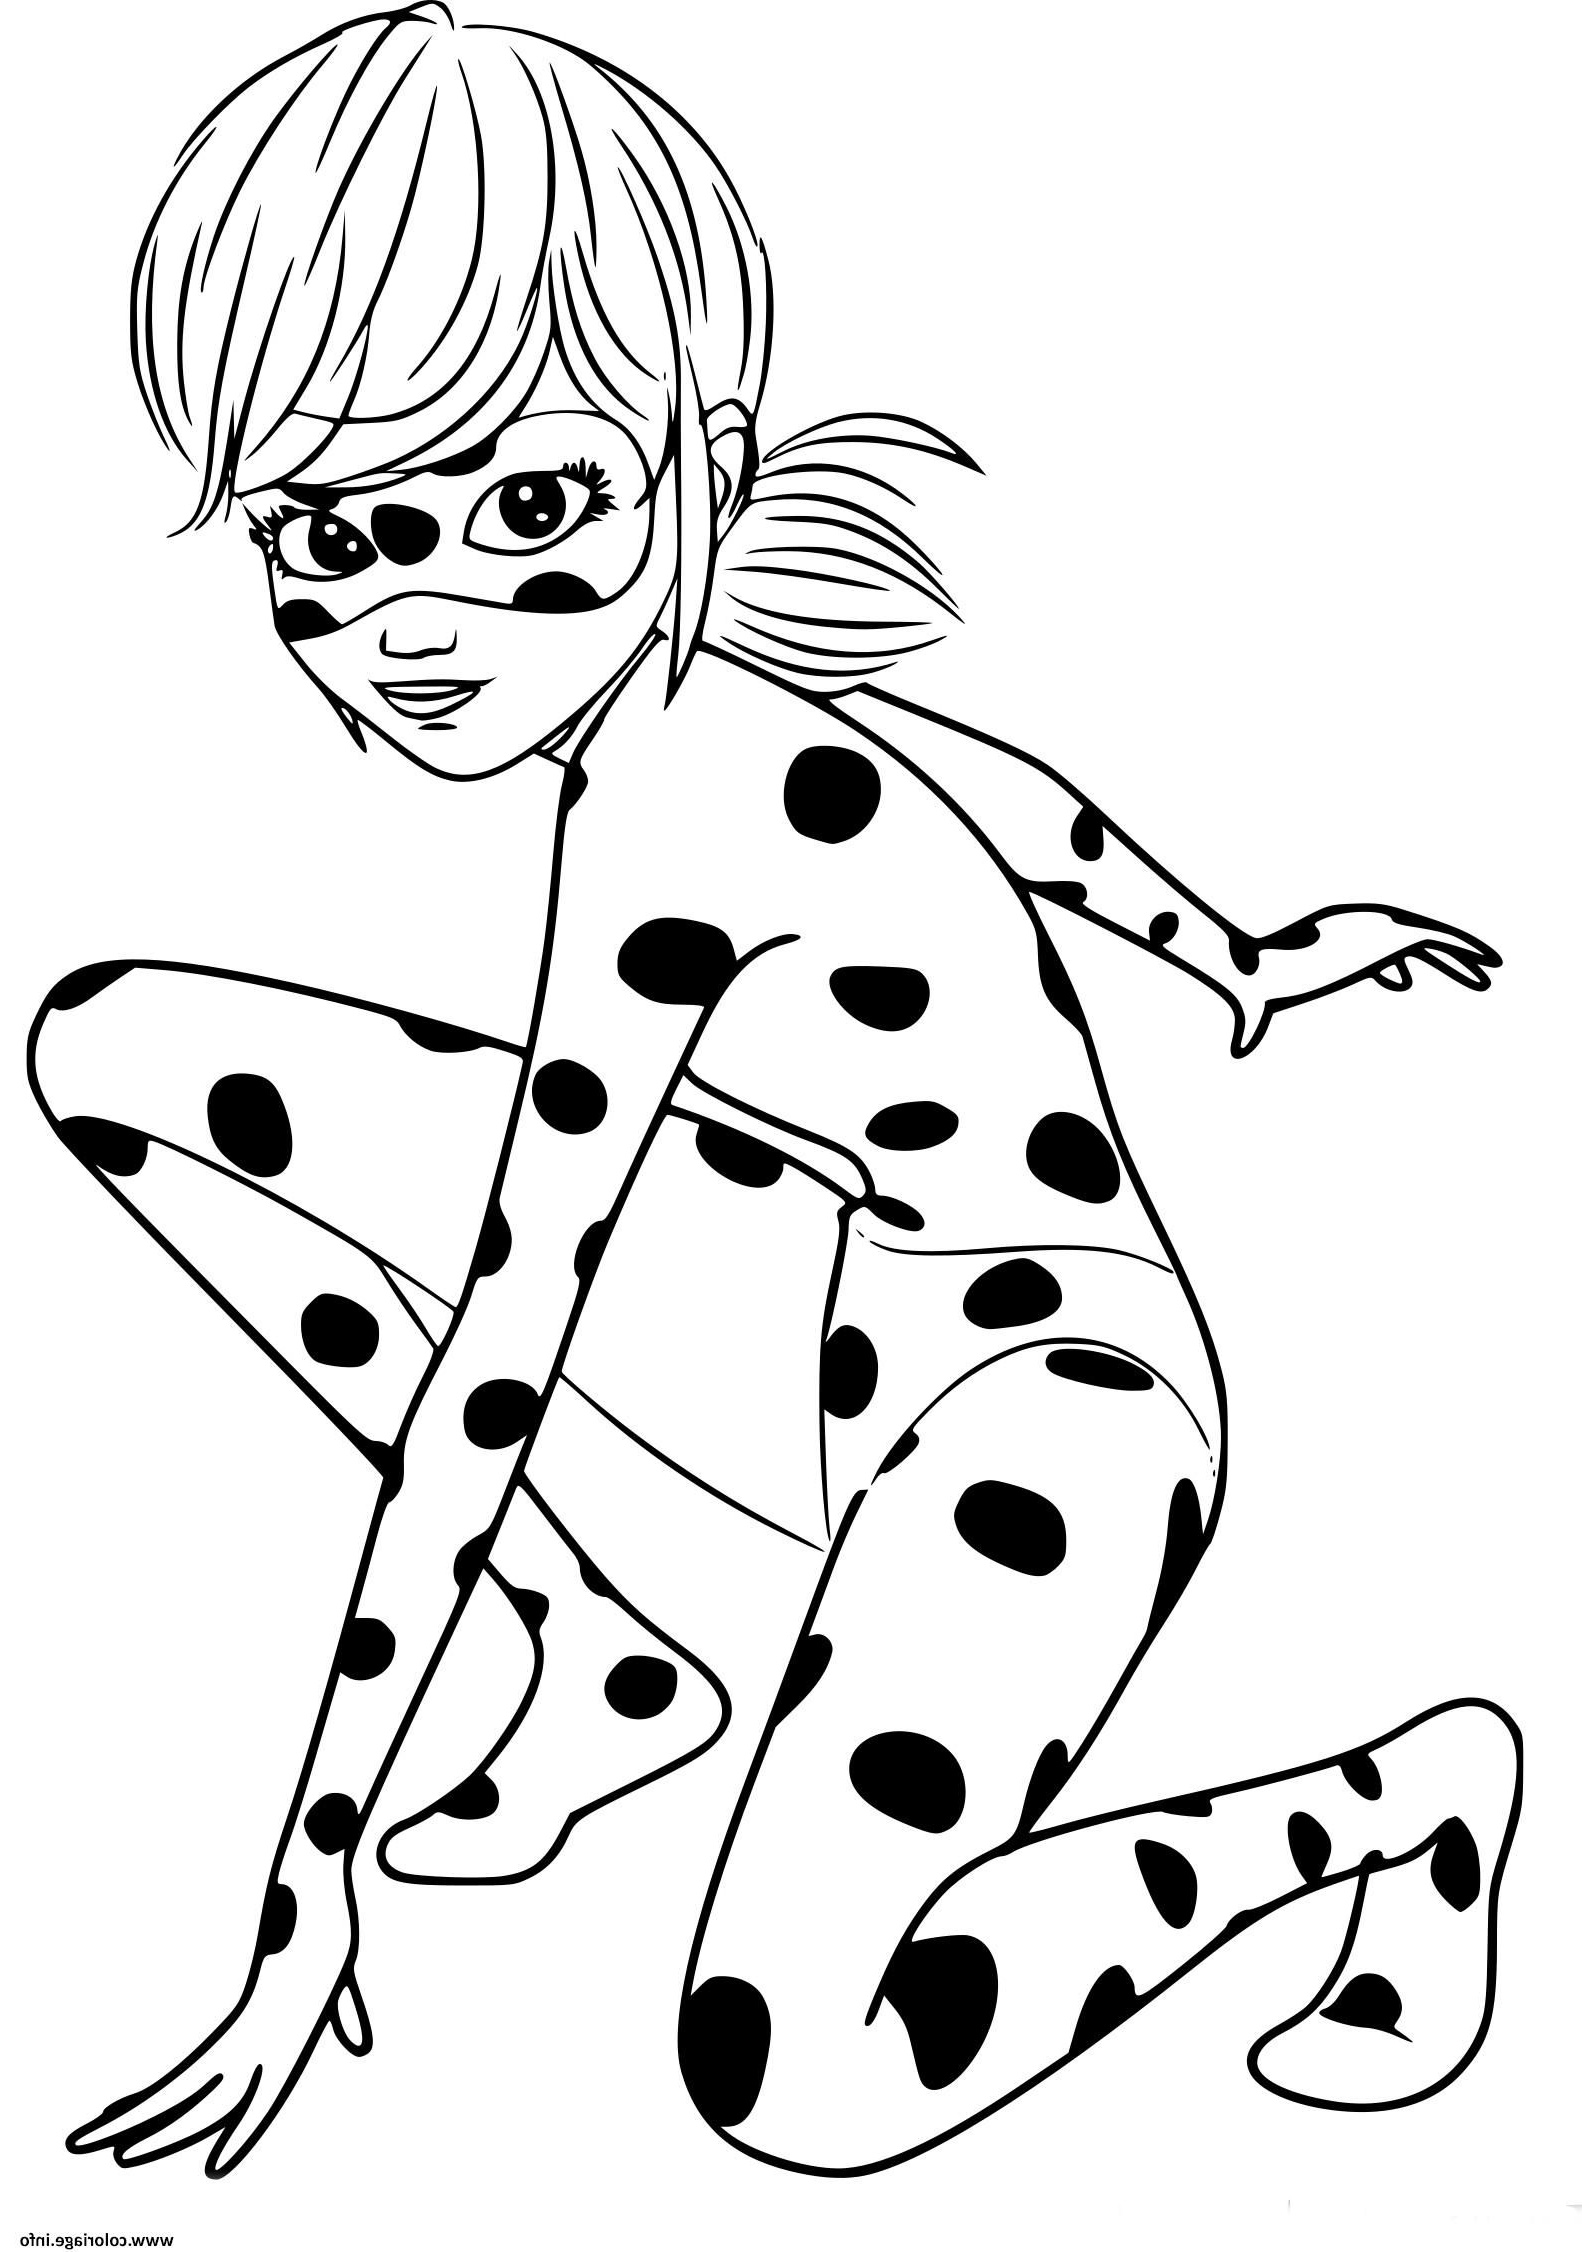 Dessin De Dessin Animé Disney Luxe Photographie Coloriage Ladybug Miraculous Chat Noir original à Imprimer